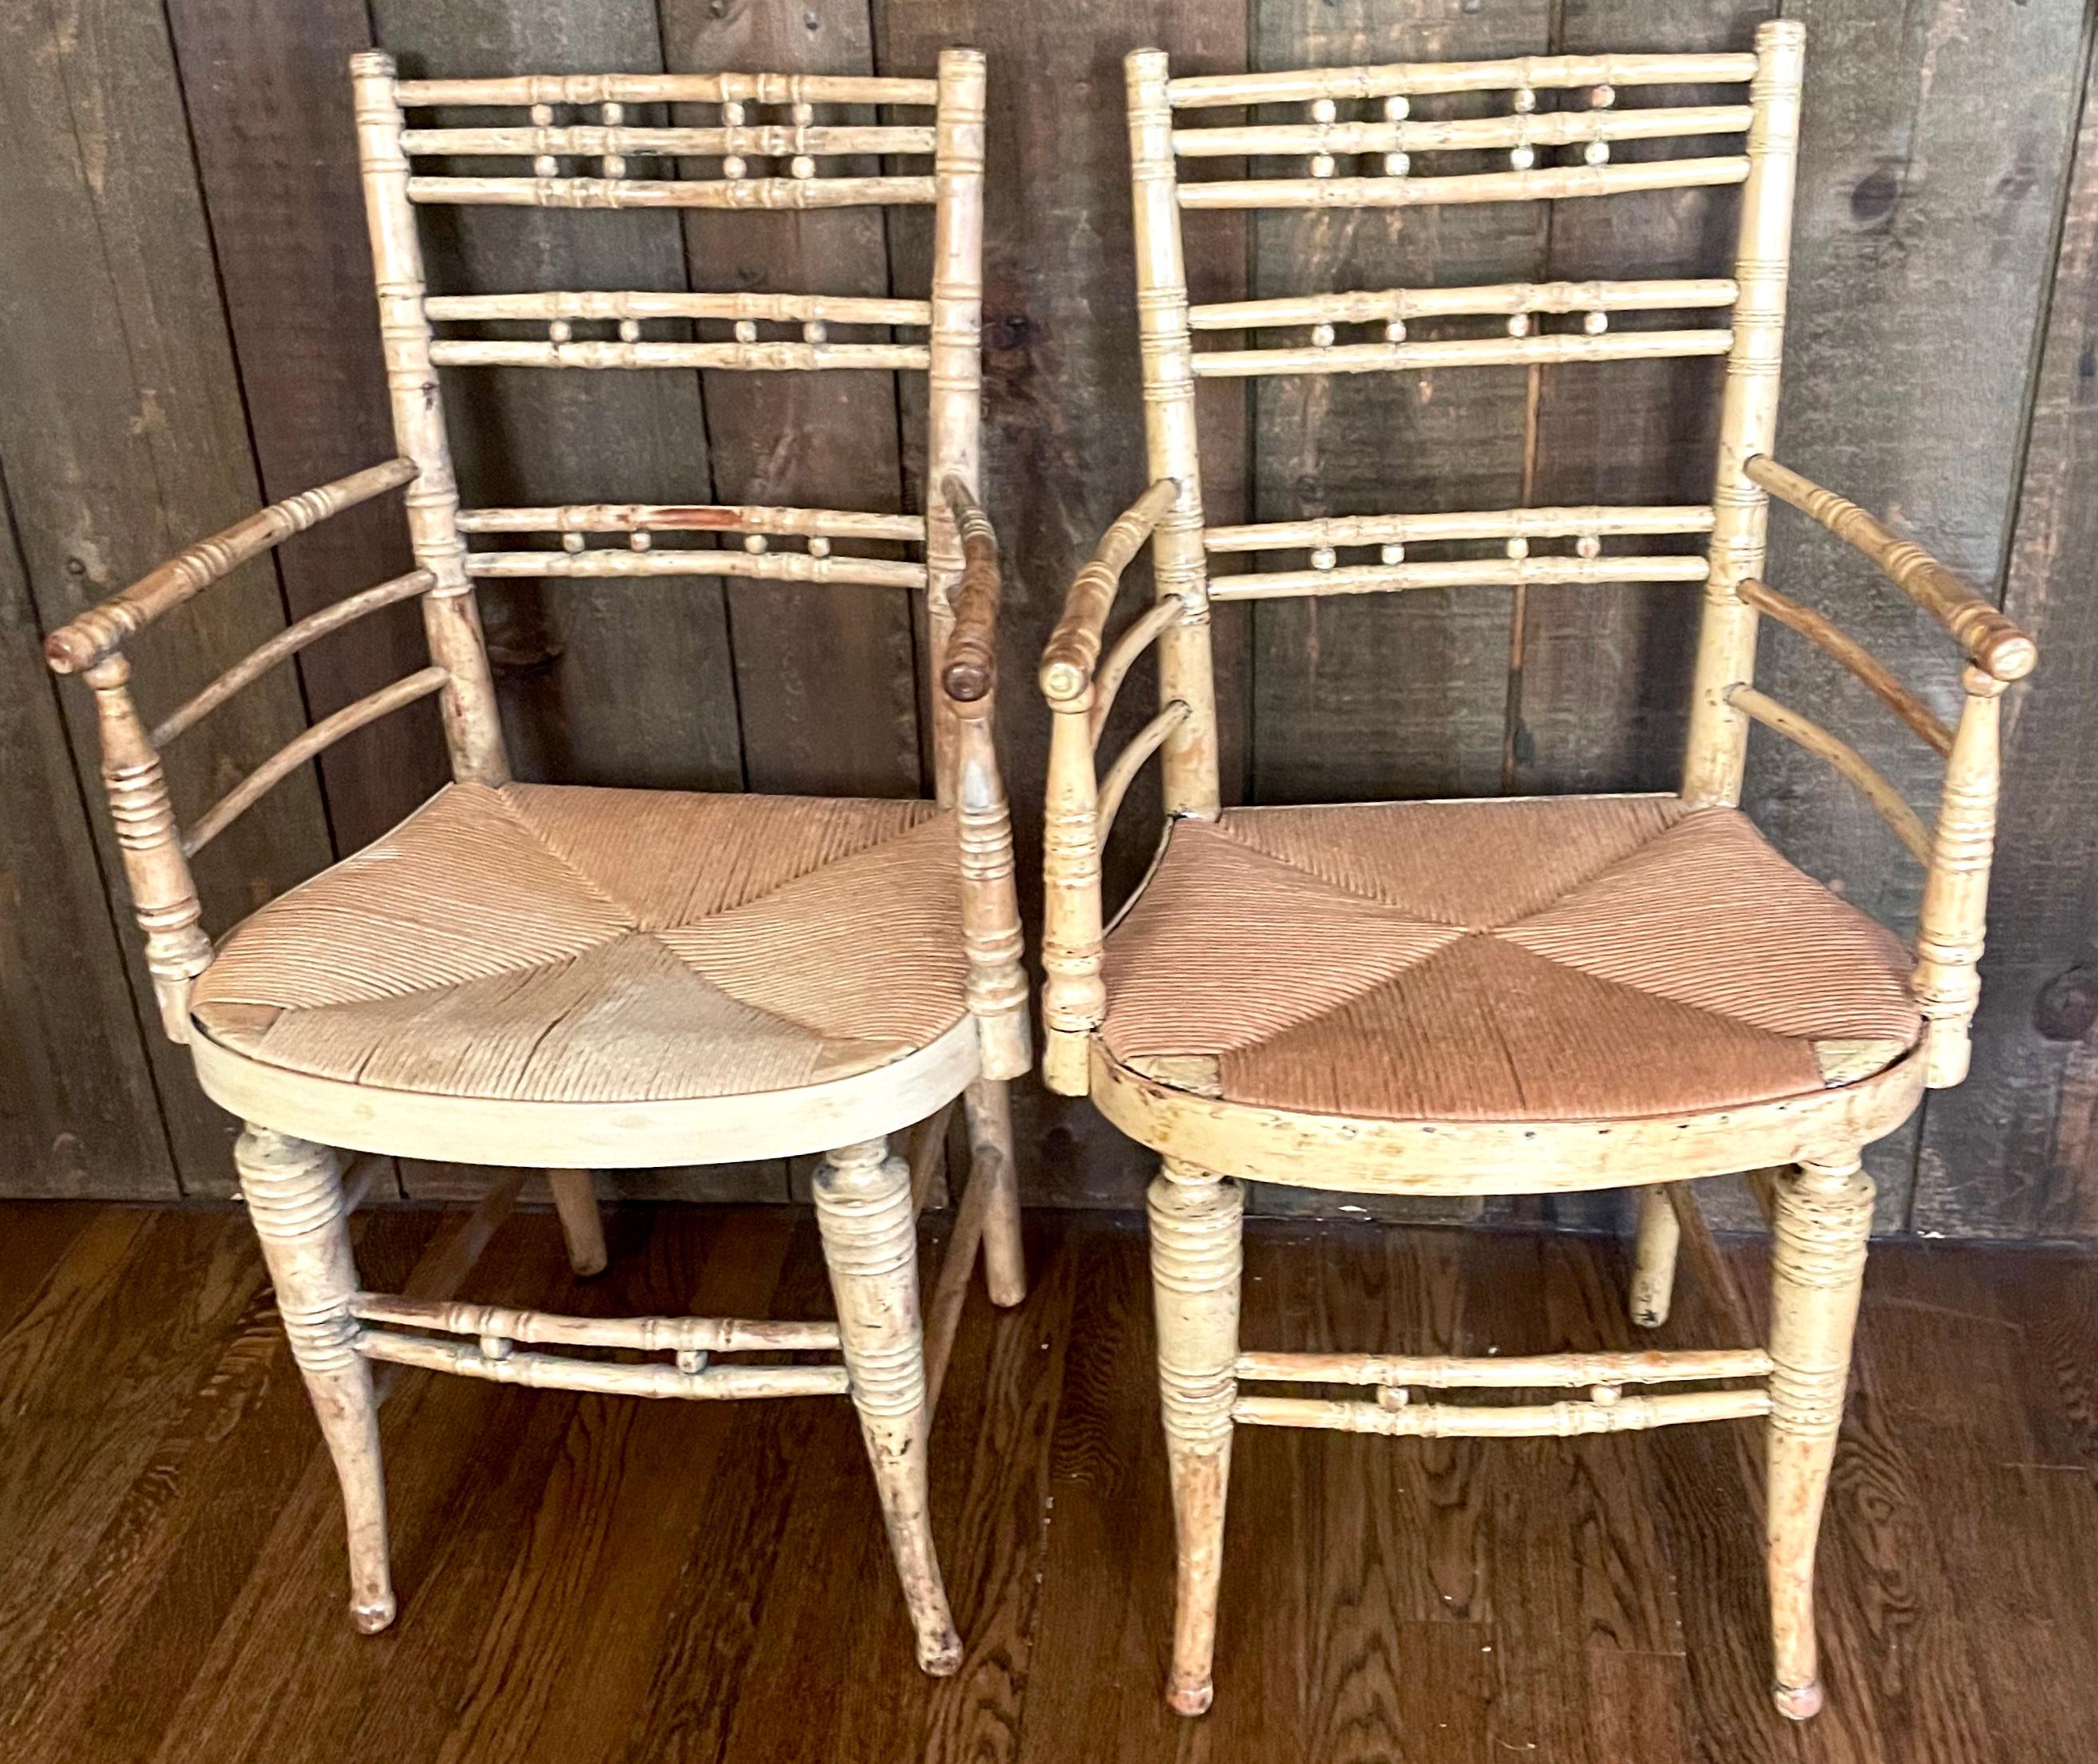 Ensemble de cinq chaises américaines en bois tourné. Ensemble de deux chaises à accoudoir et trois chaises d'appoint en bois blond et finition peinte variée avec des éléments sculptés en forme de bambou et des pieds tournés et évasés. États-Unis